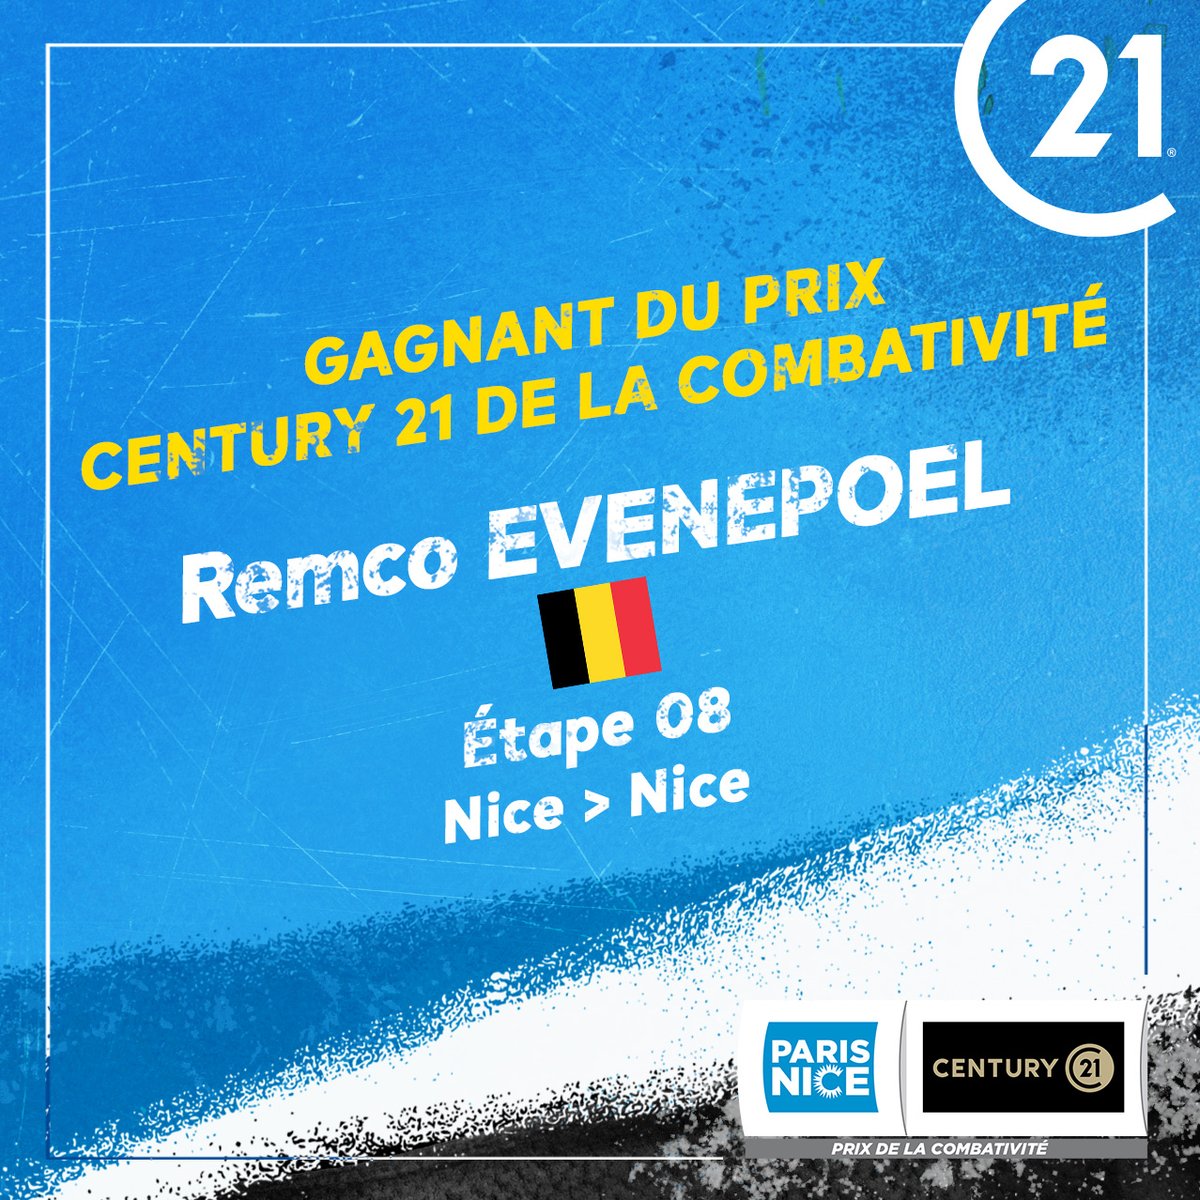 🚴‍♂️𝗣𝗔𝗥𝗜𝗦 𝗡𝗜𝗖𝗘🚴‍♂️ sur cette dernière @EvenepoelRemco reçoit le Prix CENTURY 21 de la Combativité ! 𝗖𝗘𝗡𝗧𝗨𝗥𝗬 𝟮𝟭, 𝗣𝗮𝗿𝘁𝗲𝗻𝗮𝗶𝗿𝗲 𝗢𝗳𝗳𝗶𝗰𝗶𝗲𝗹 𝗱𝘂 𝗣𝗮𝗿𝗶𝘀 𝗡𝗶𝗰𝗲. @soudalquickstep #ParisNice @ParisNice